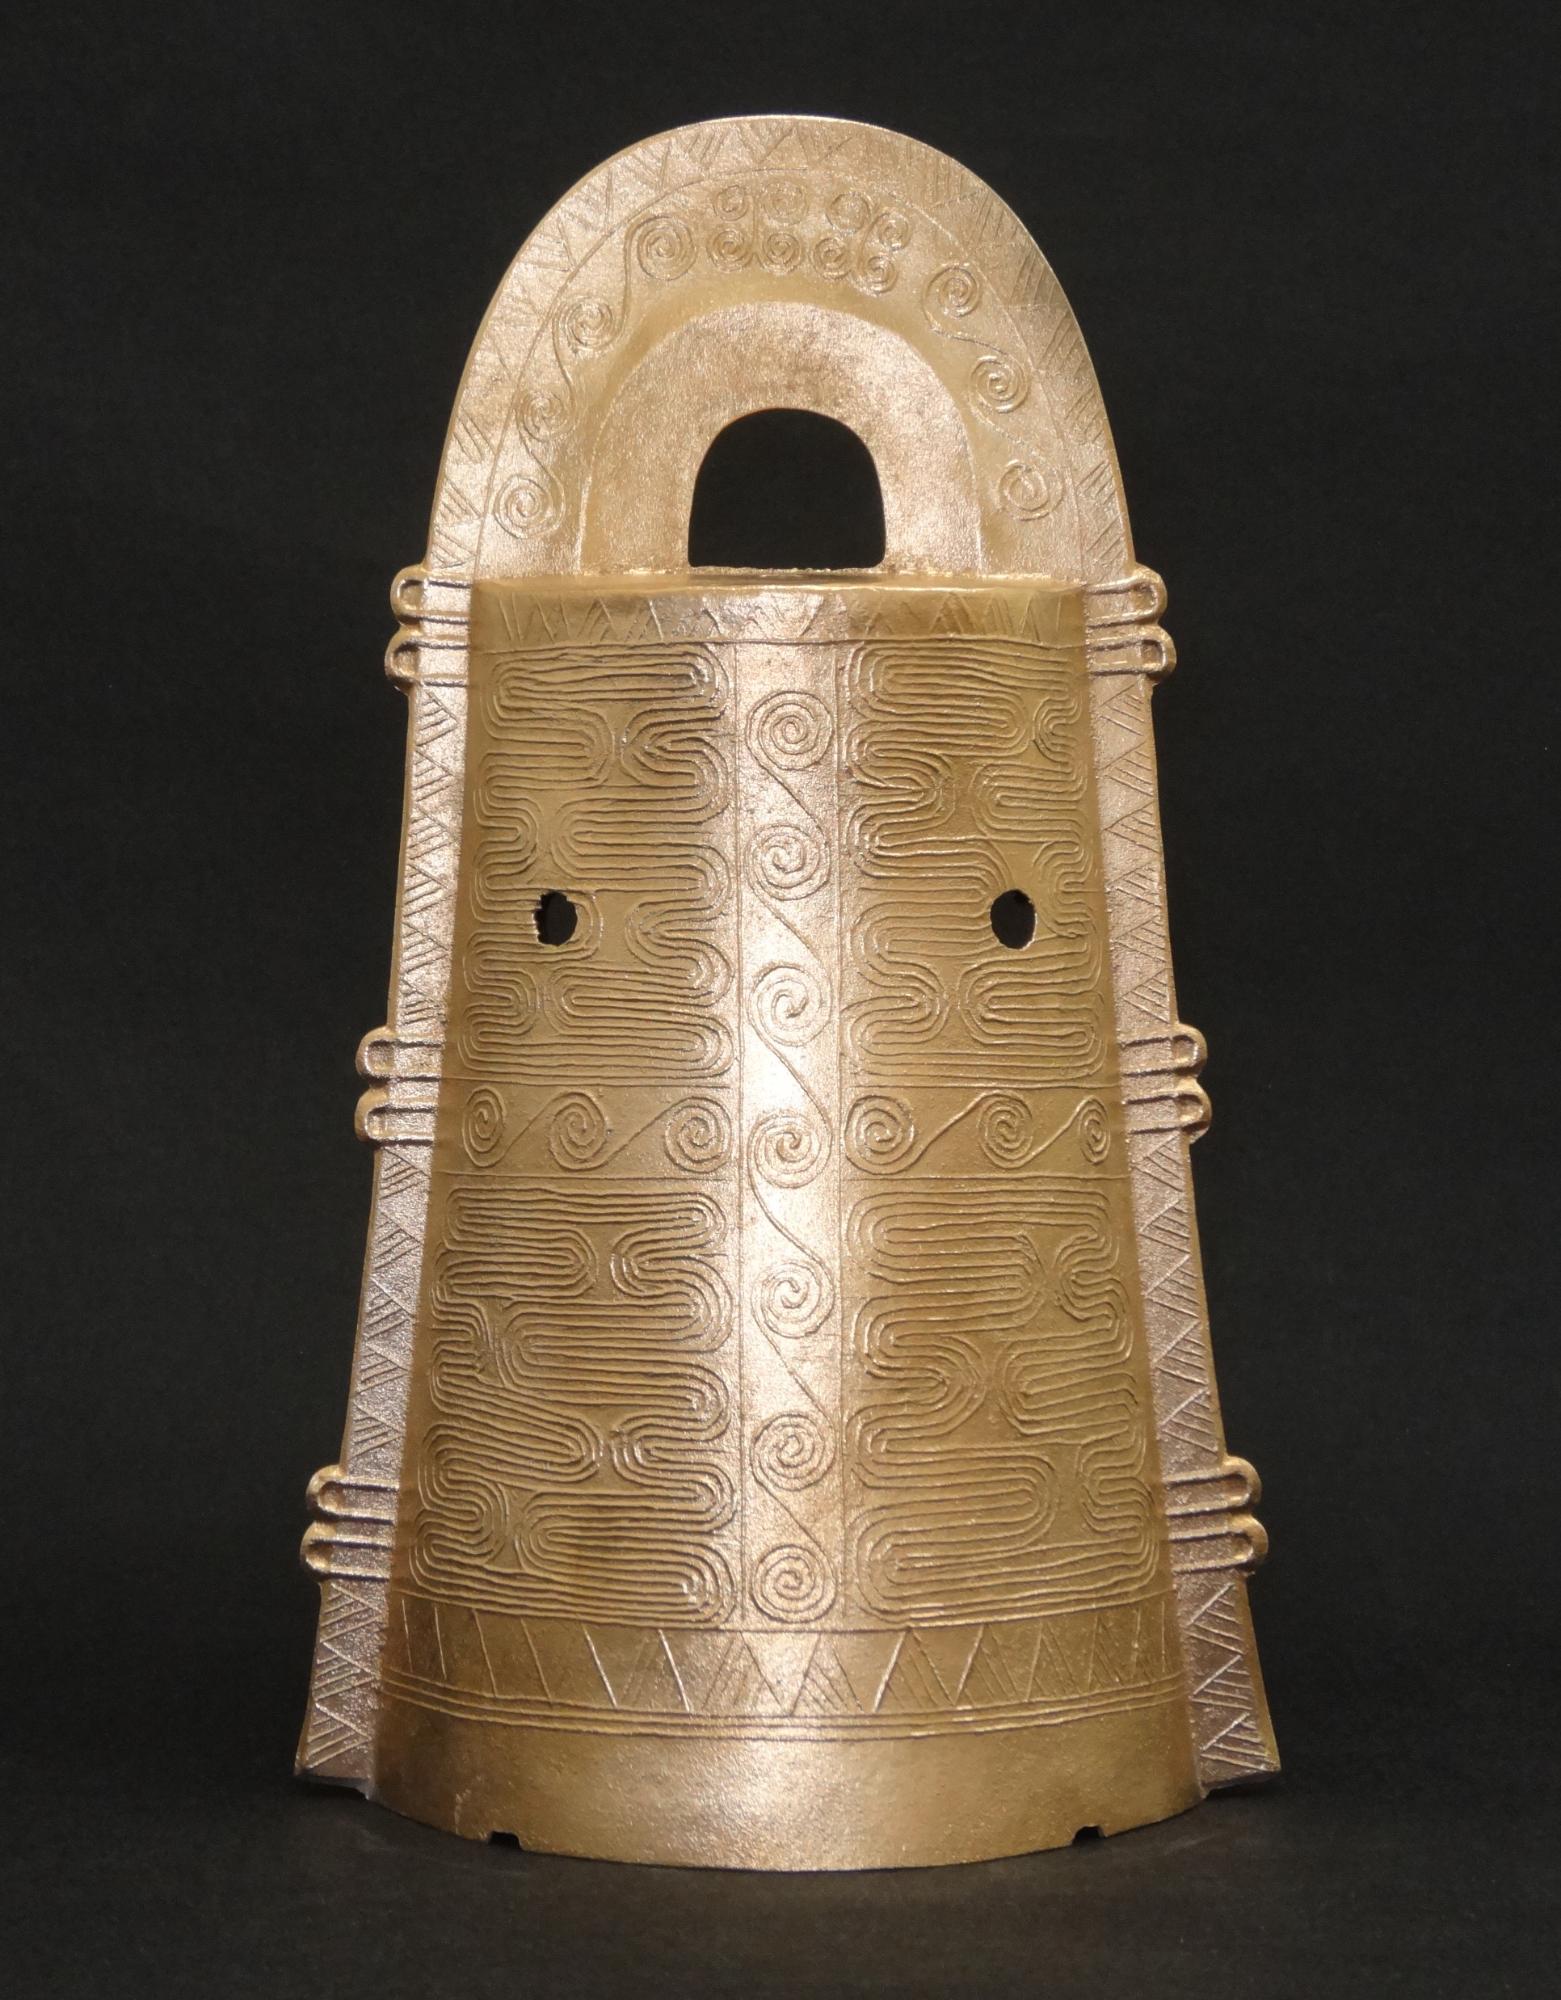 東奈良遺跡で出土した1号銅鐸鋳型に基づいた復元銅鐸